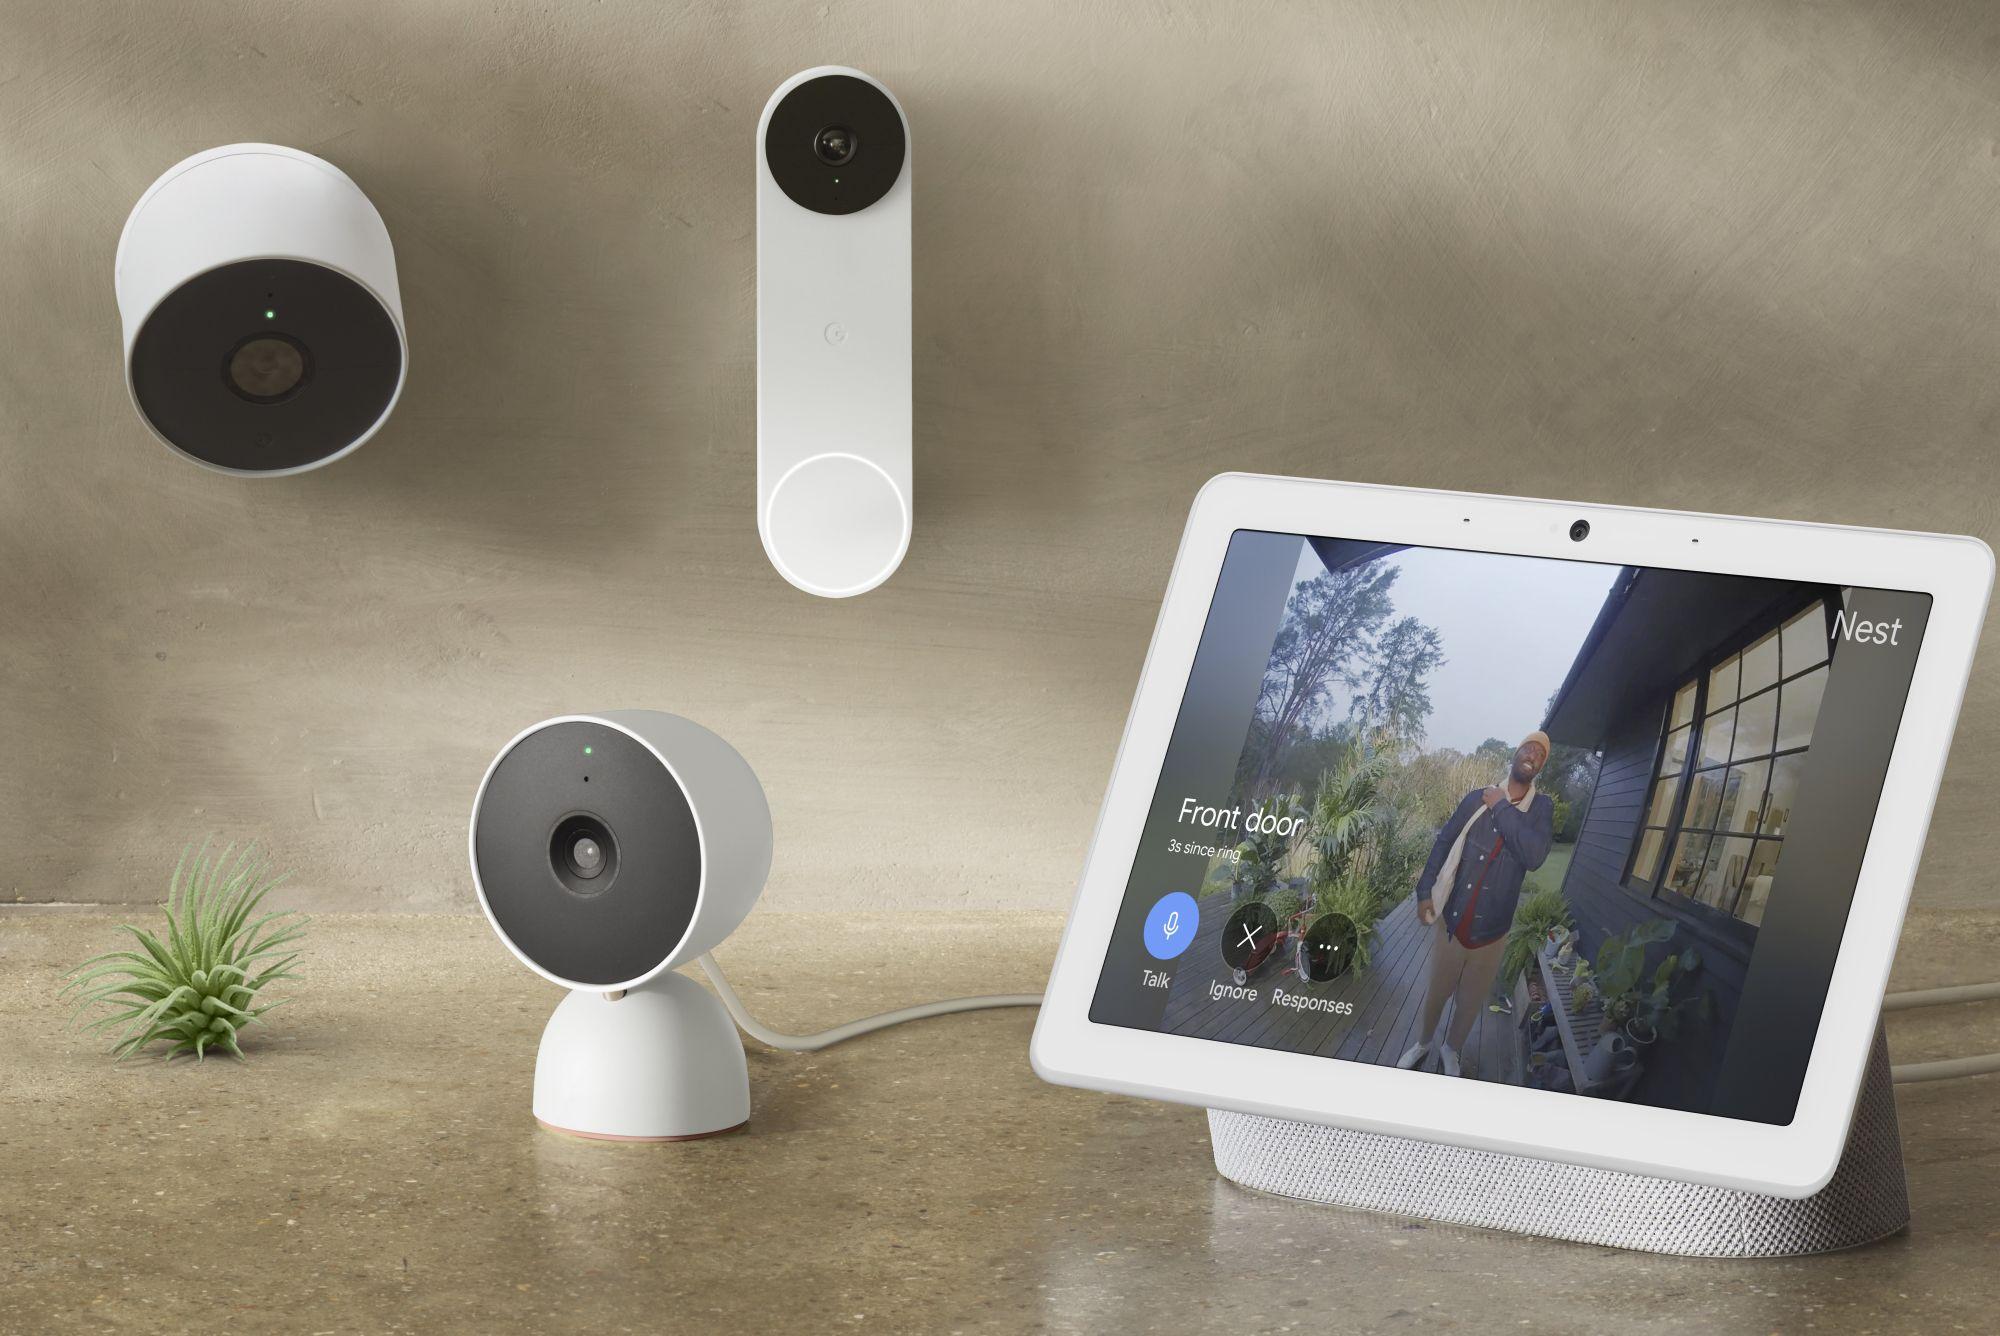 Google Nest met à jour sa famille de caméras |  Mobile